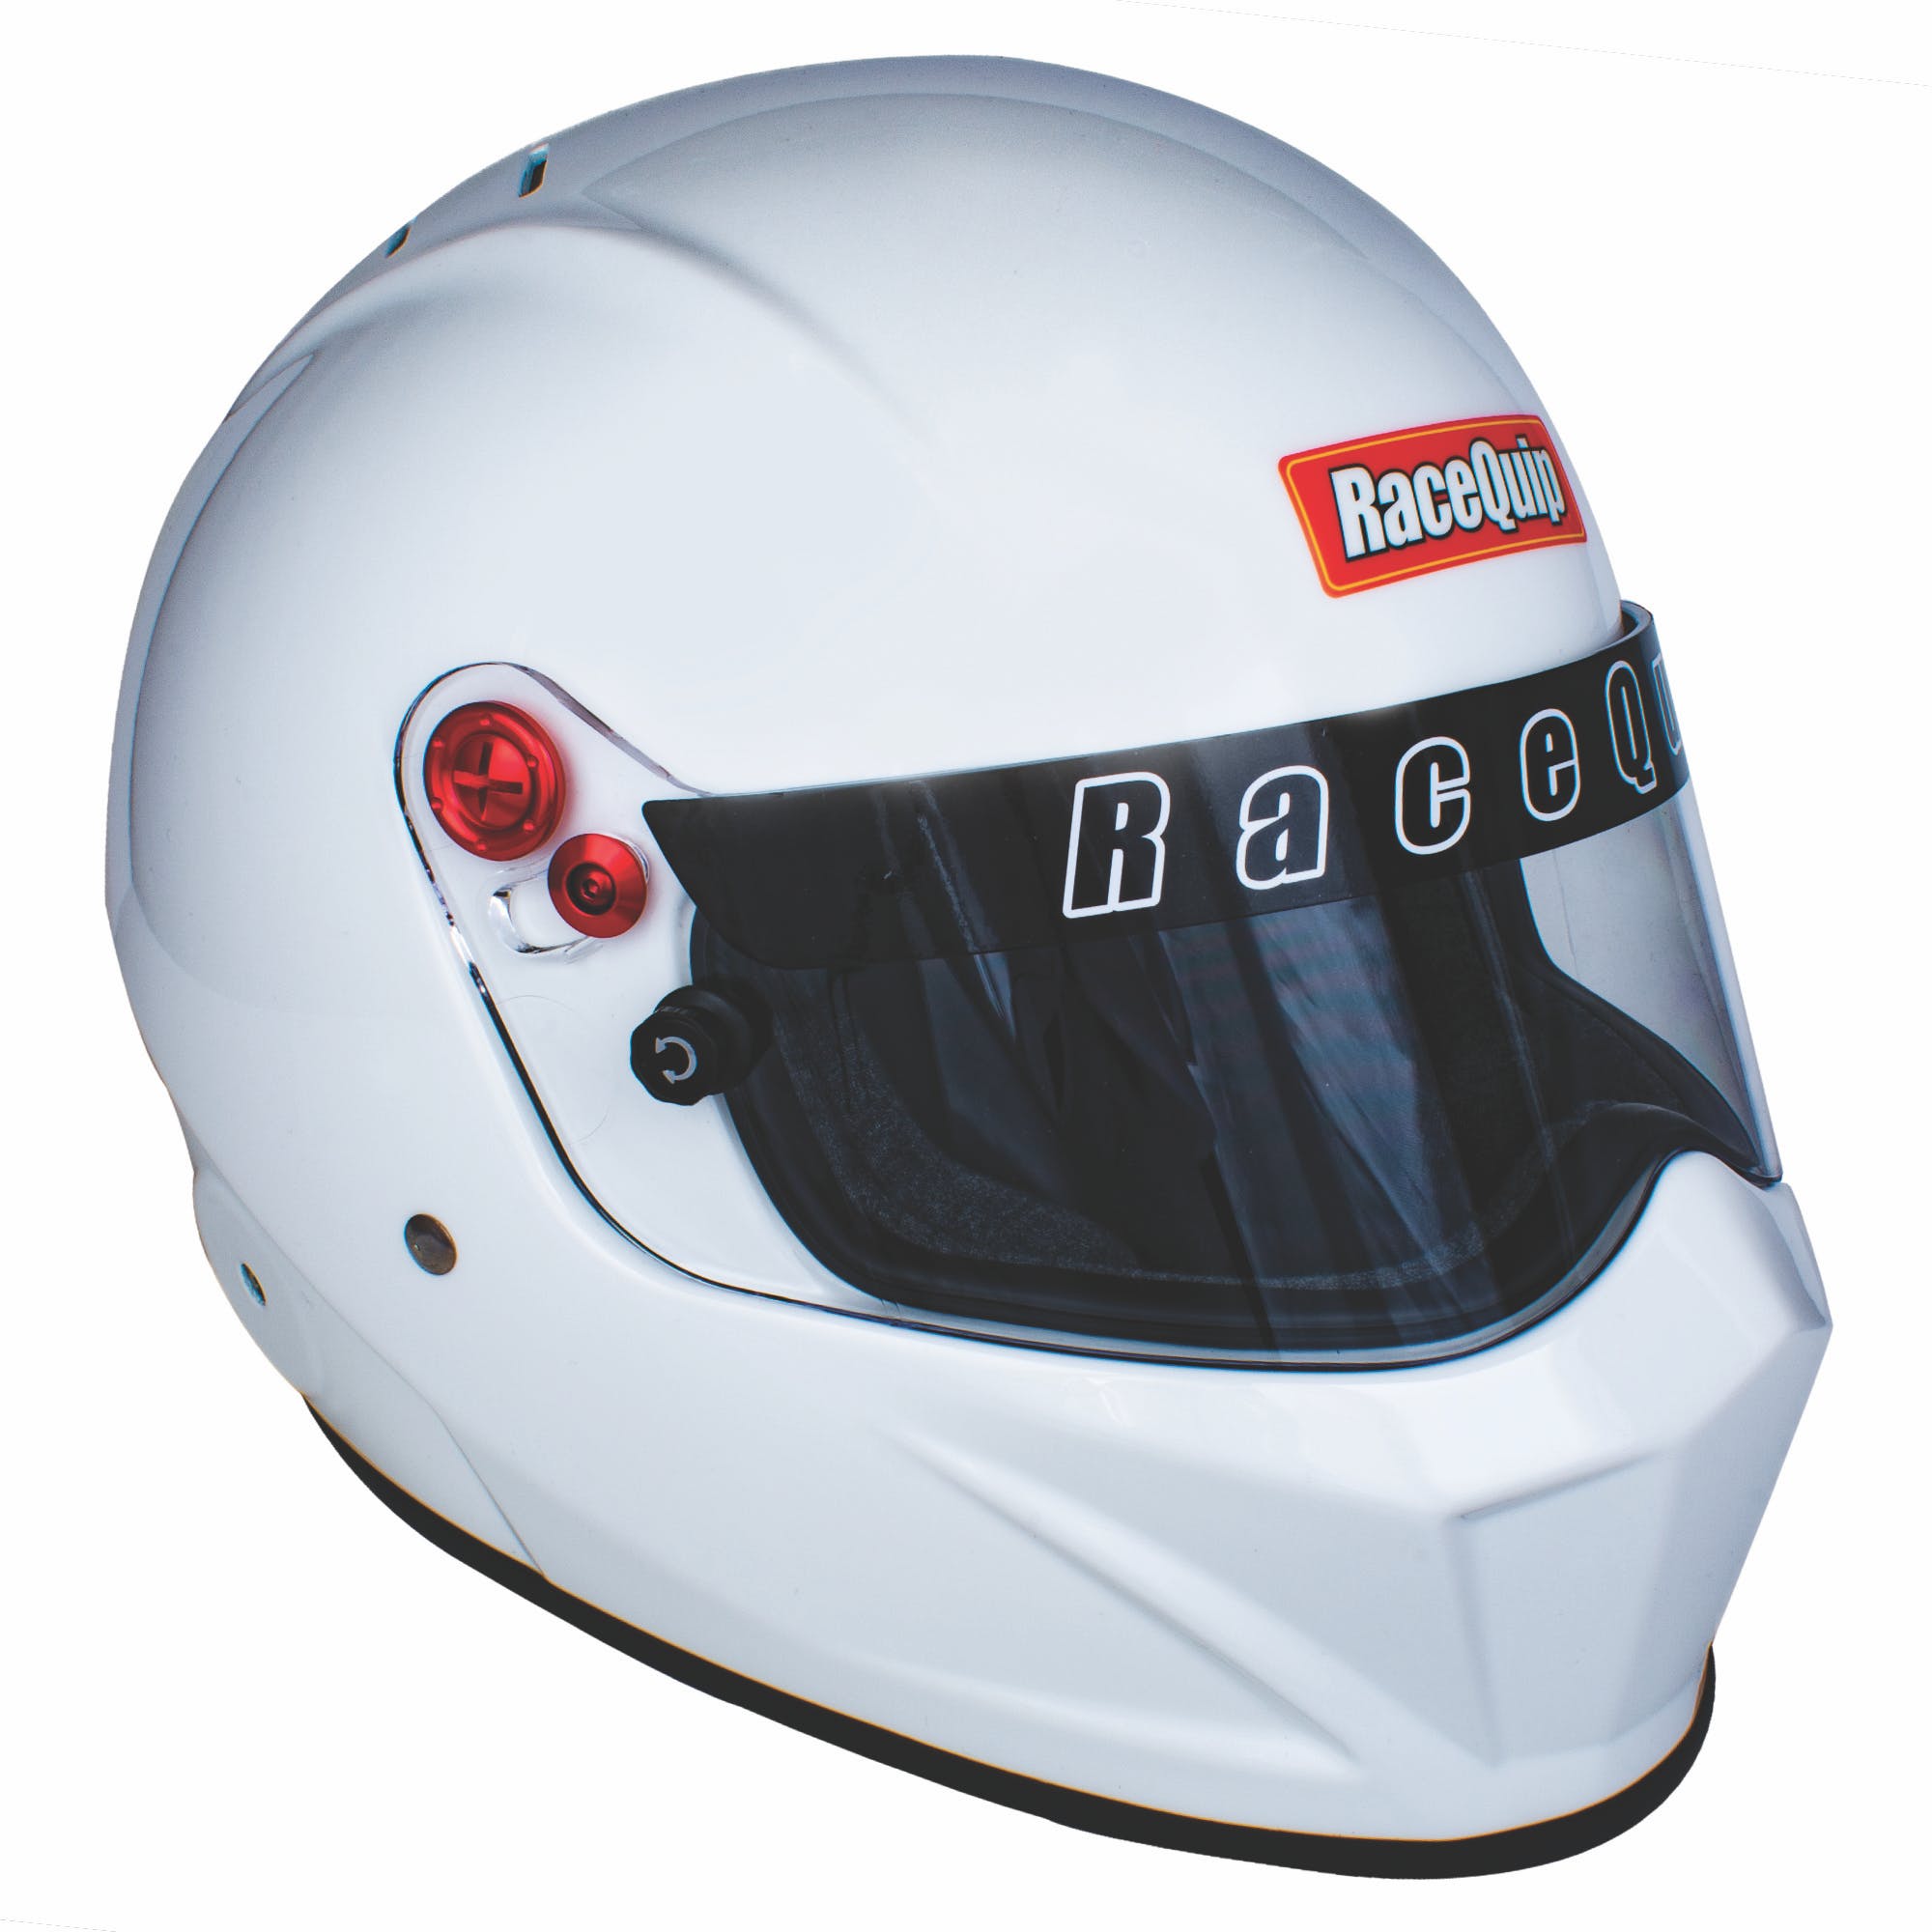 RaceQuip 286115 VESTA20 Full Face Helmet Snell SA2020 Rated; Gloss White Large